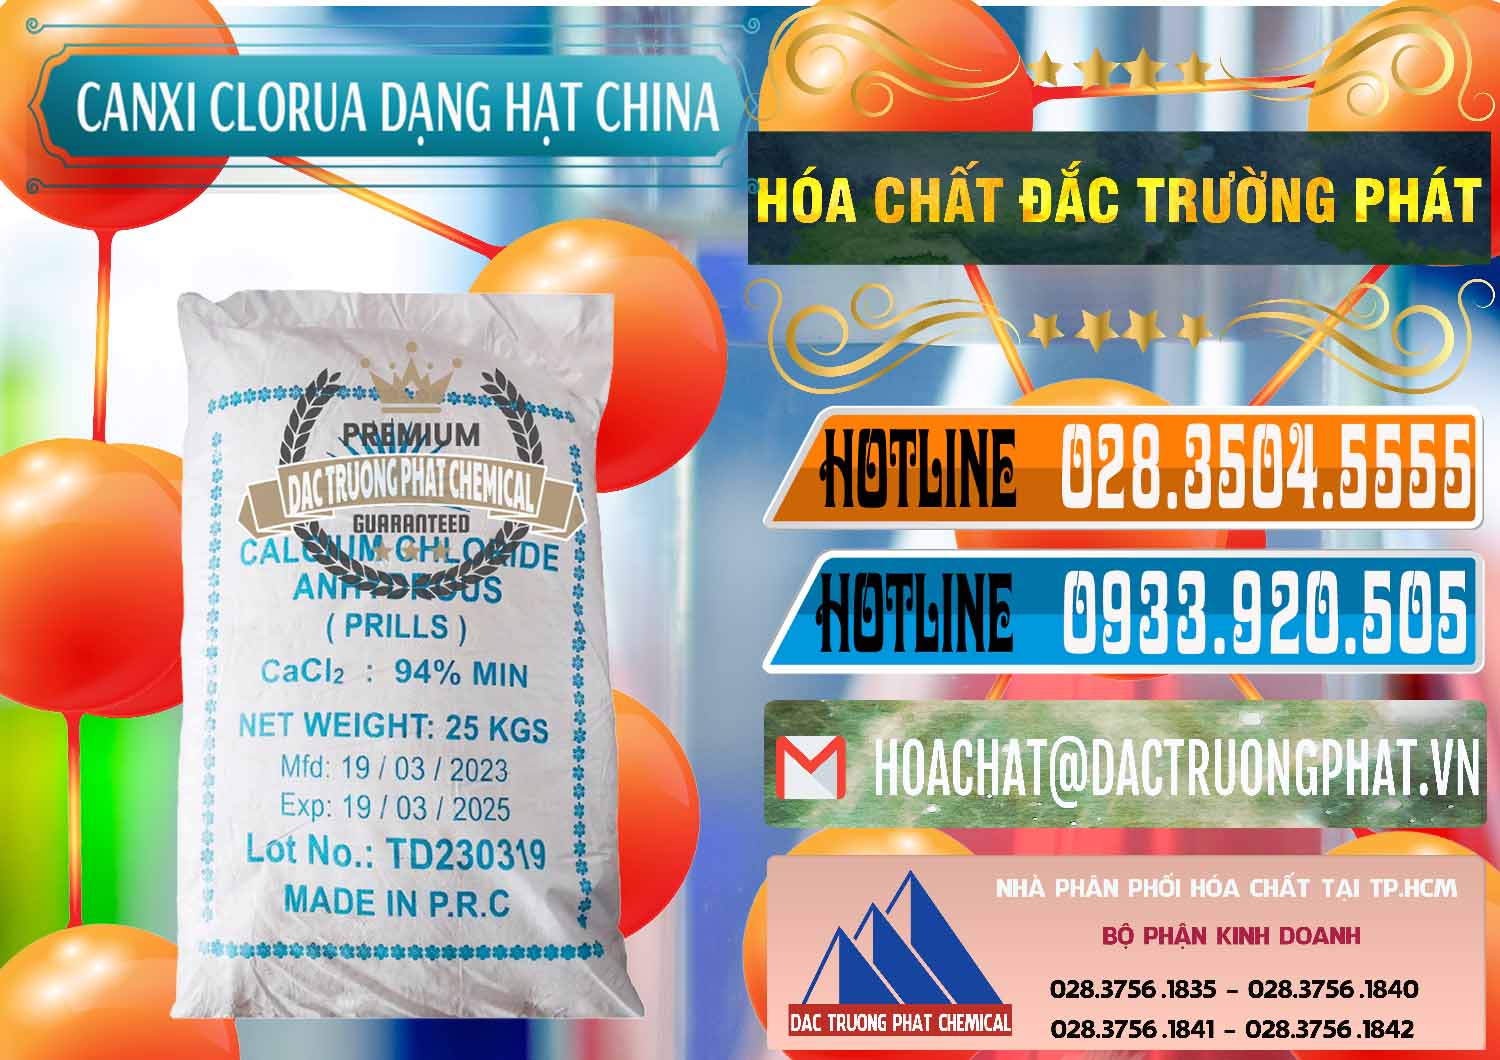 Đơn vị chuyên cung ứng - bán CaCl2 – Canxi Clorua 94% Dạng Hạt Trung Quốc China - 0373 - Nơi chuyên phân phối - cung ứng hóa chất tại TP.HCM - stmp.net